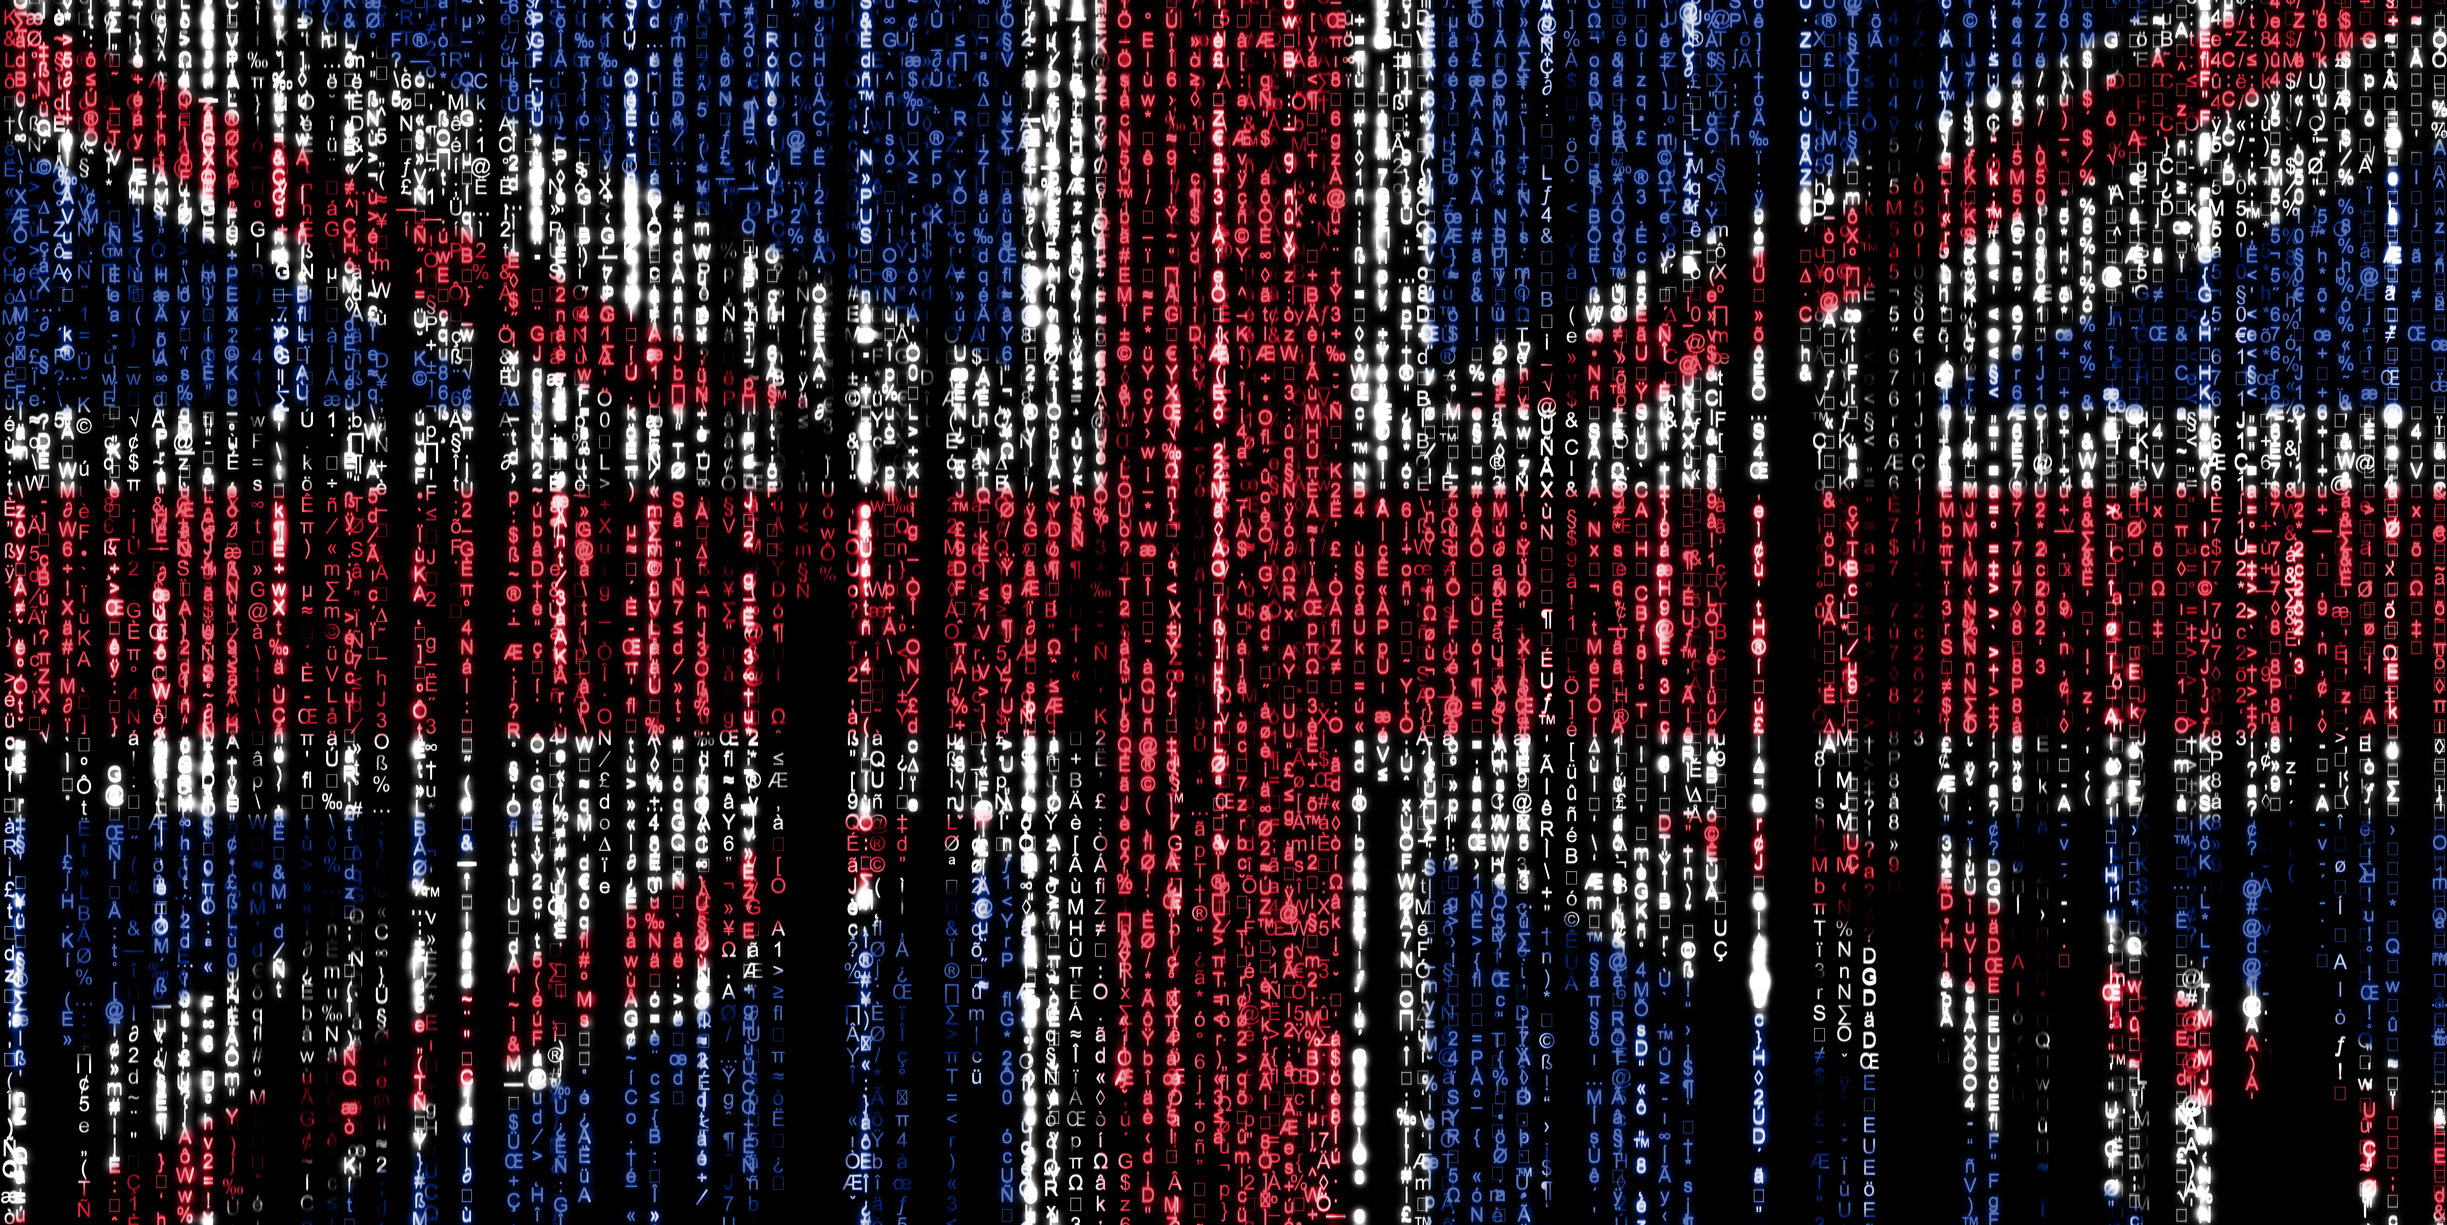 Royaume-Uni : les données de 40 millions d’électeurs exposées